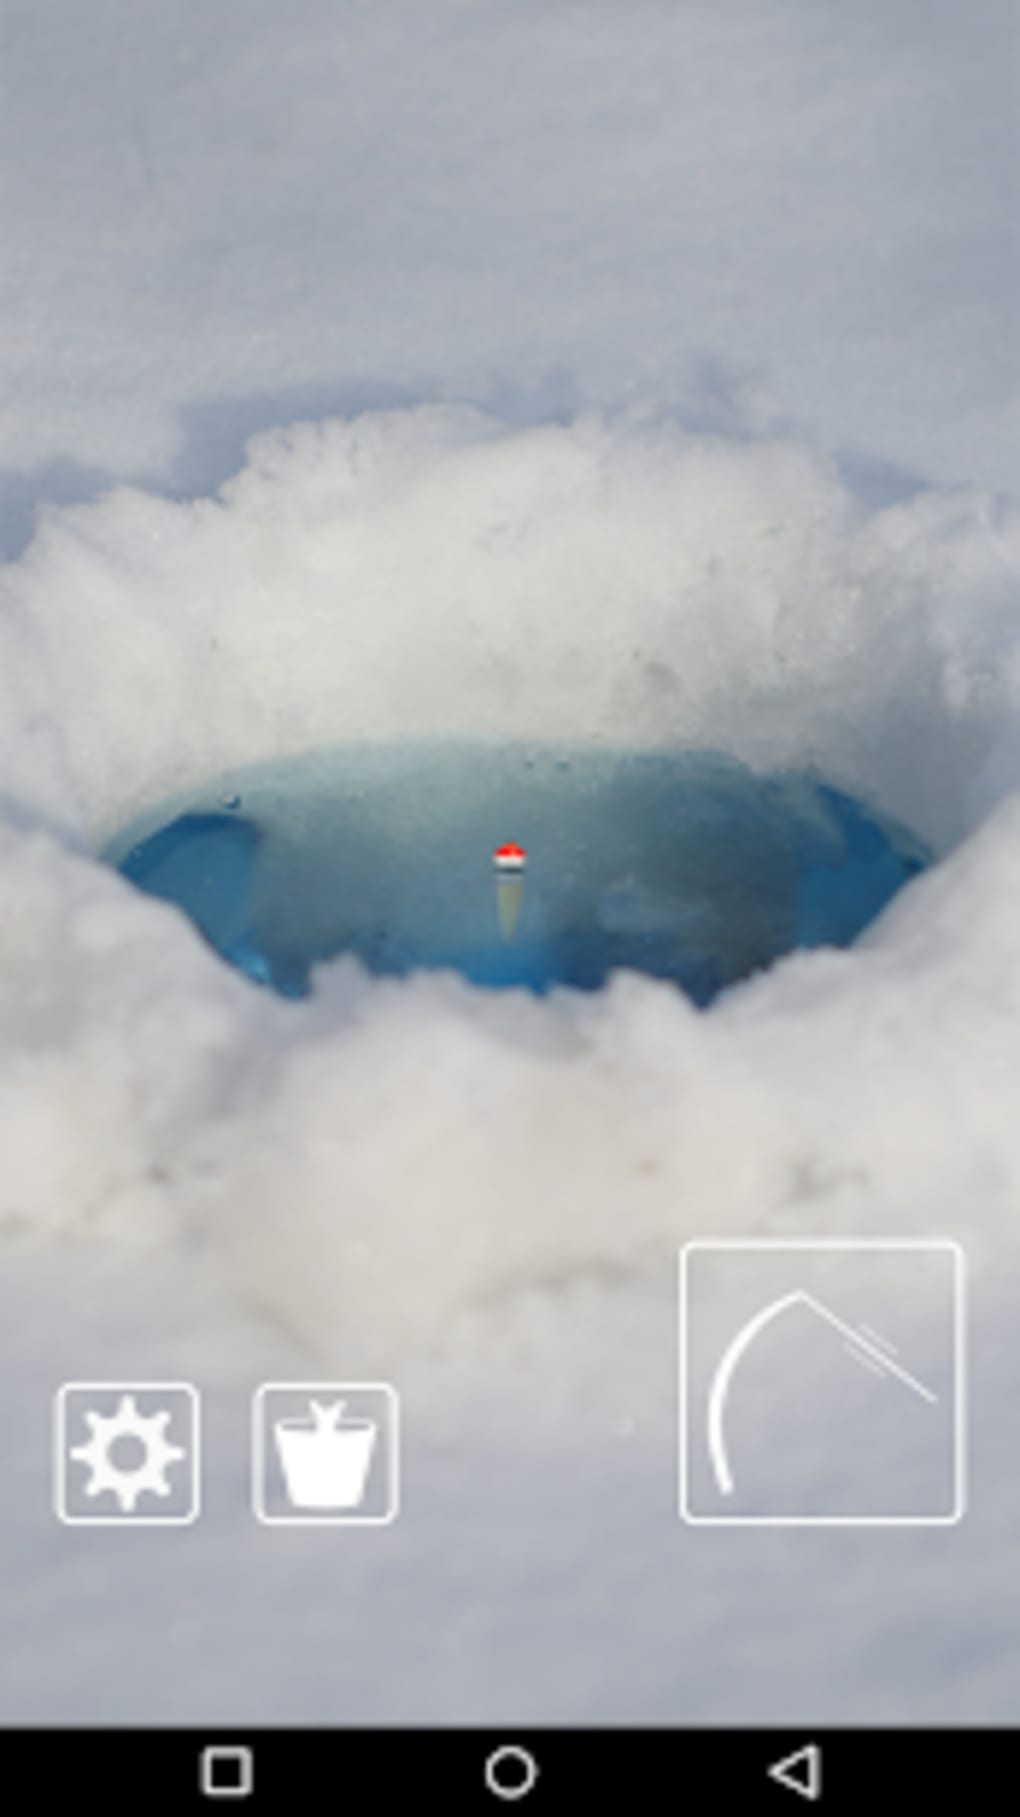 Joguinho da nuvem: como jogar no celular [Float Cloud]